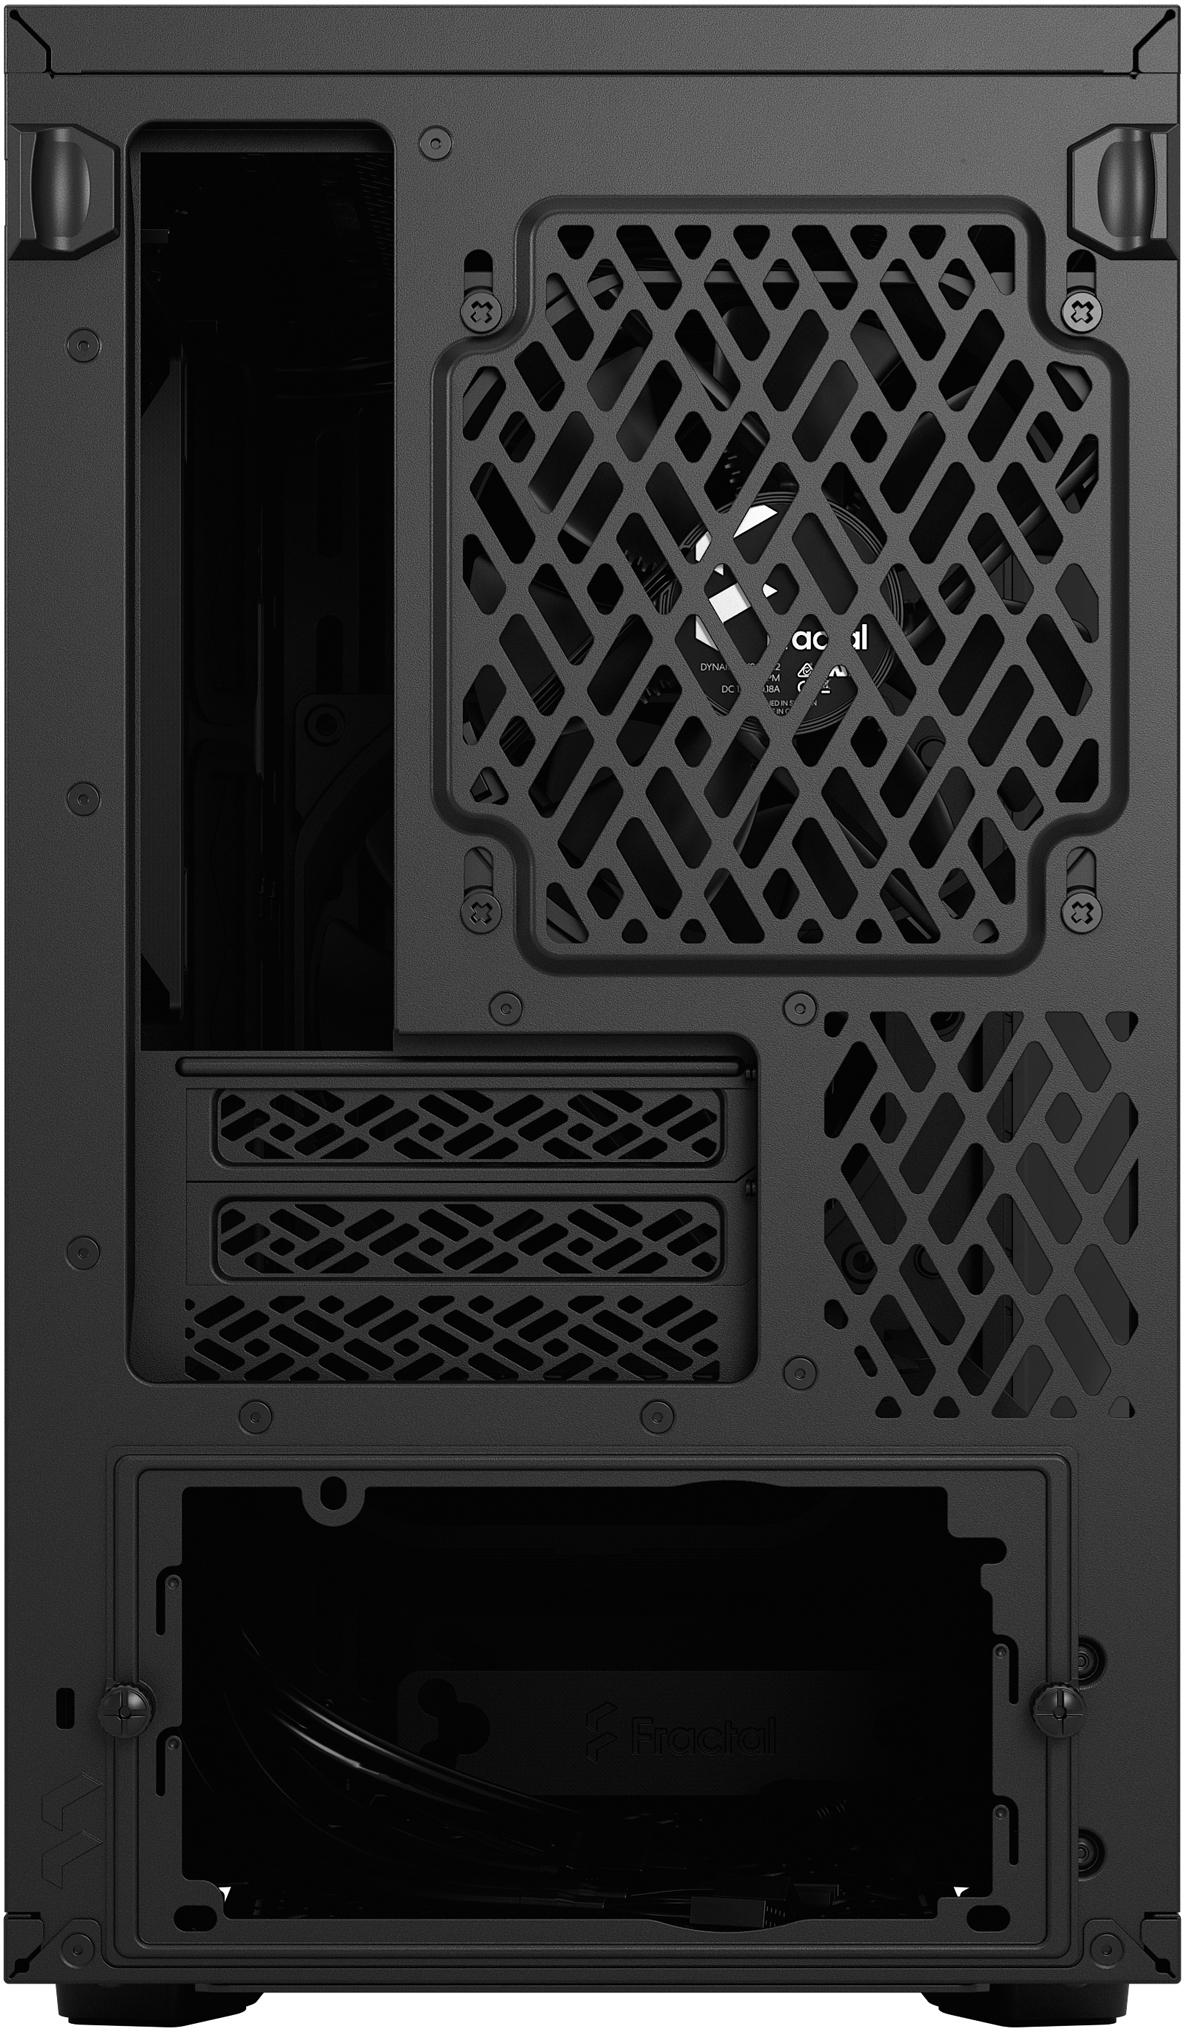 Fractal Design - Caixa Mini-ITX Fractal Design Define 7 Nano Black TG Light Tint